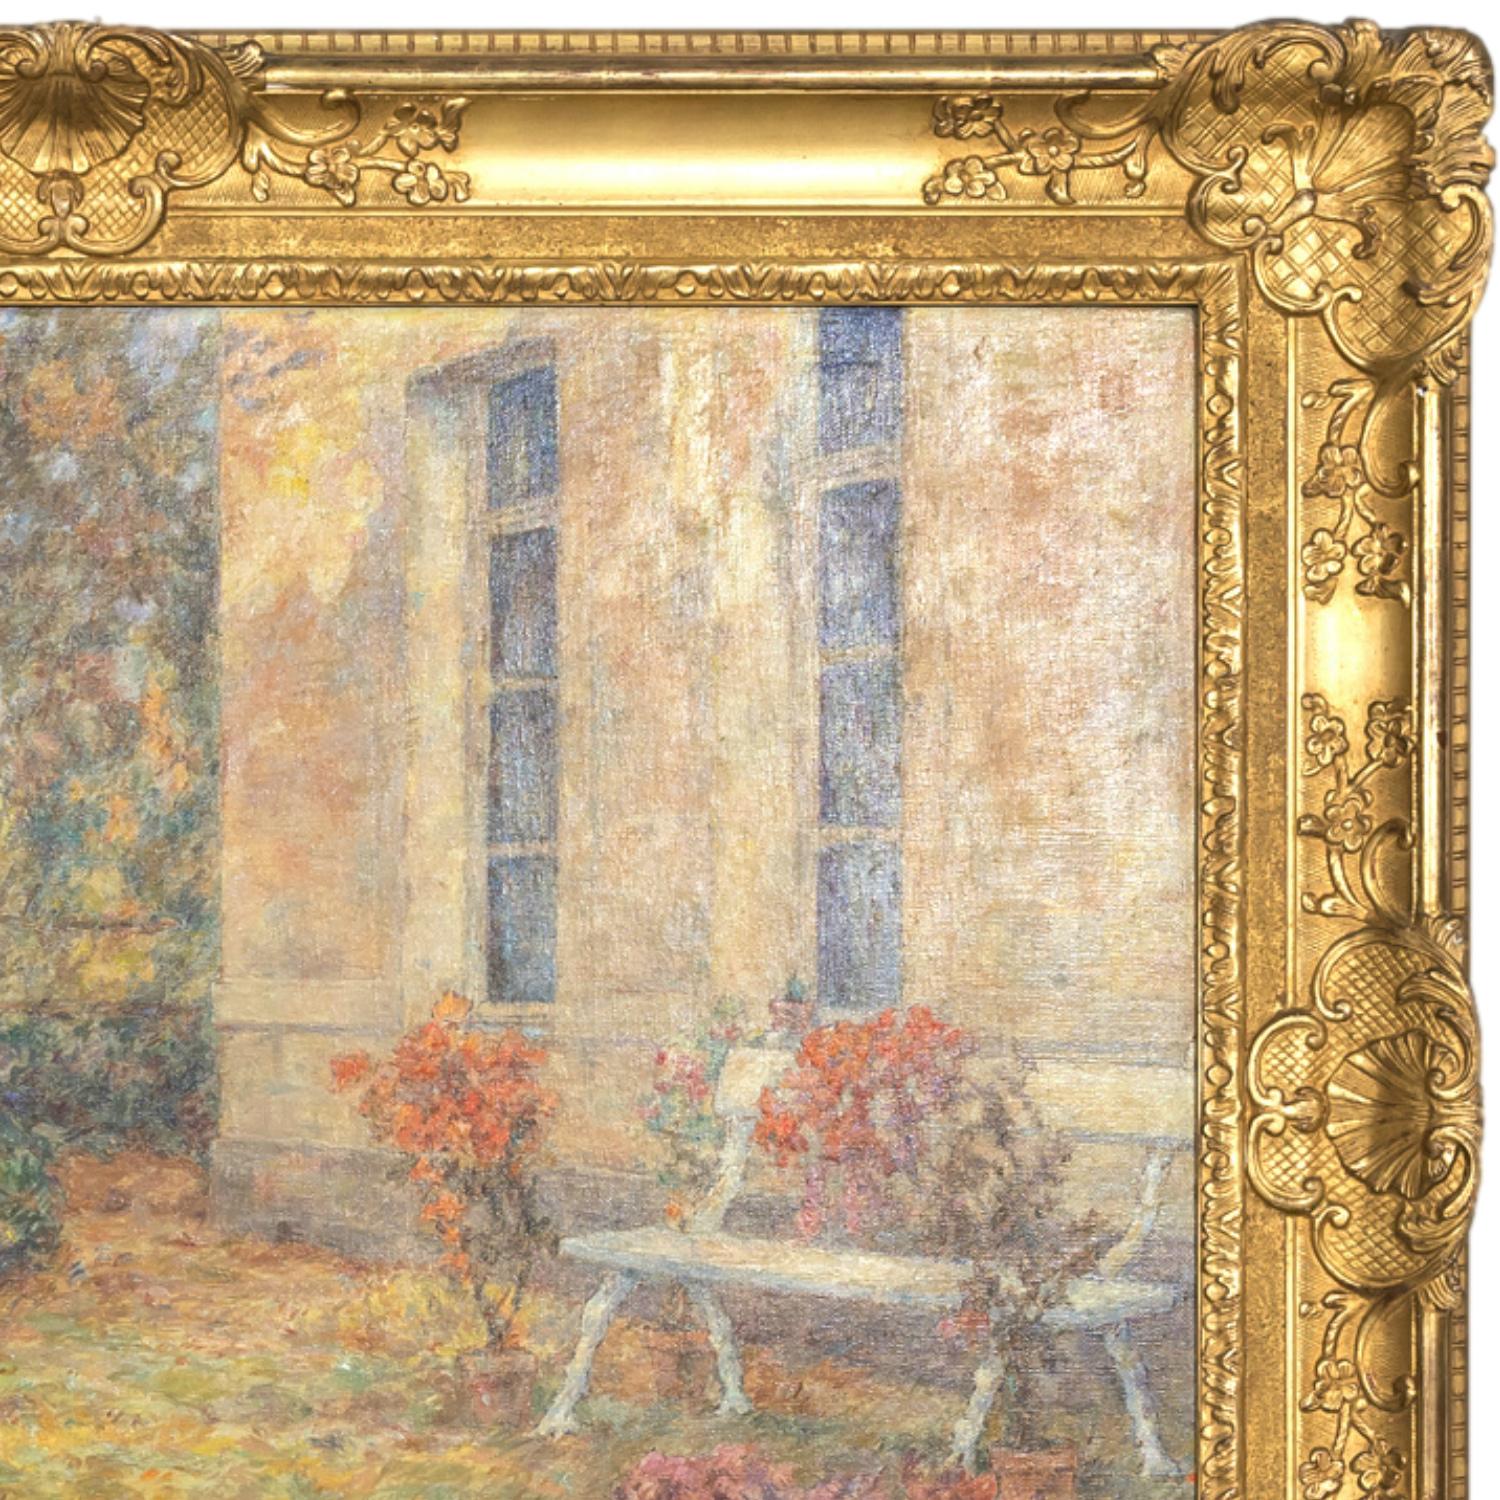 Large Framed French Impressionist Oil Garden Landscape by Henri Duhem, Signed 1